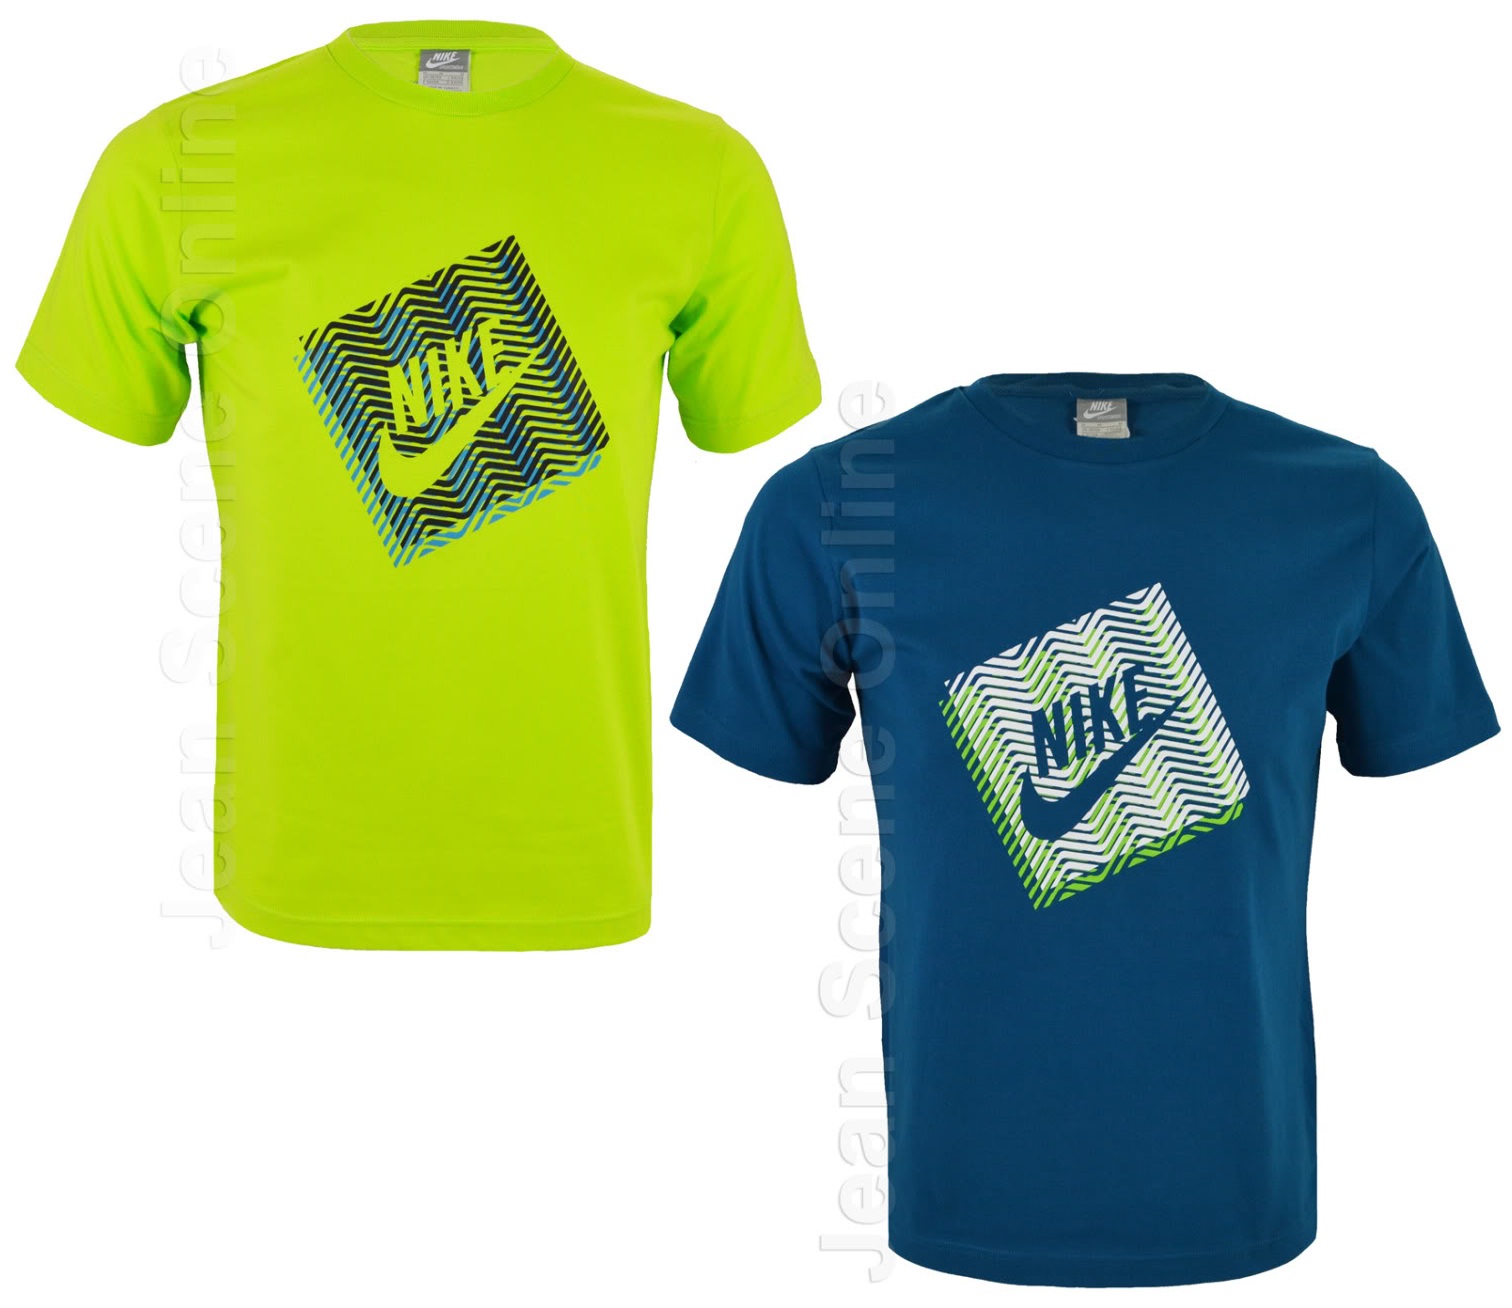 New Nike Men's Lime Green Petrol Printed T-Shirt Retro Slim Fit Top S M ...